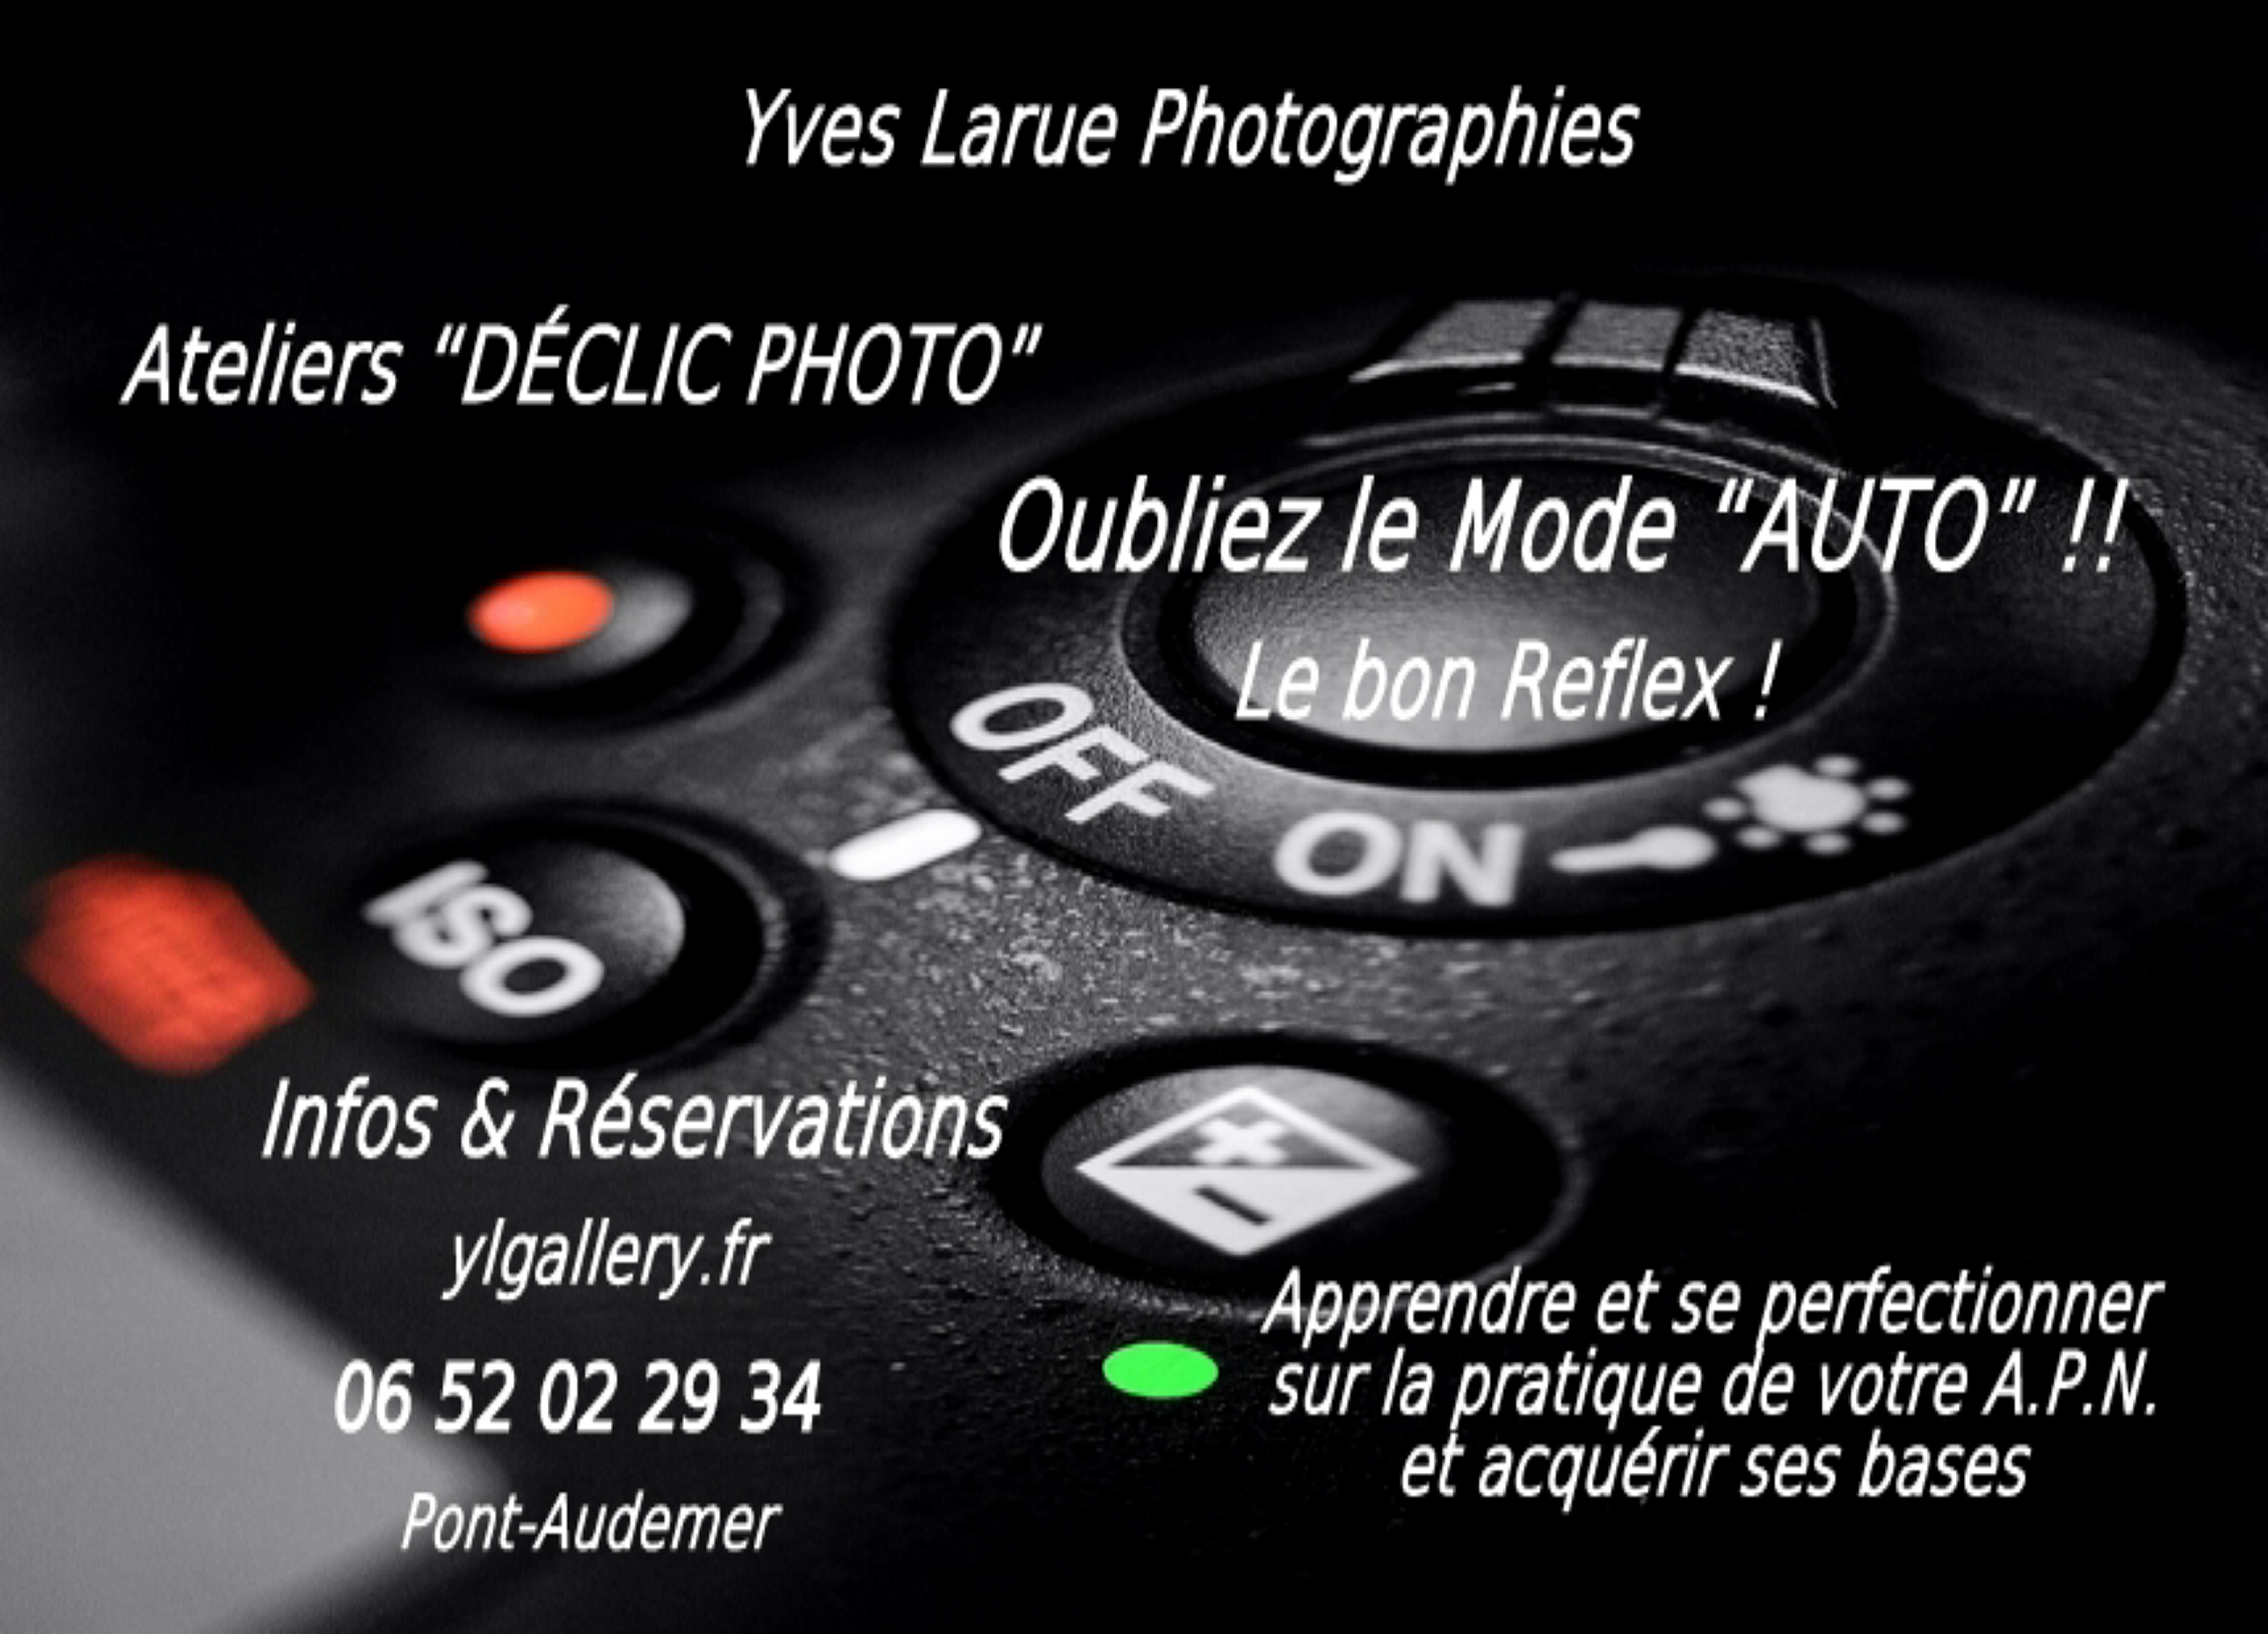 Ateliers Declic Photo